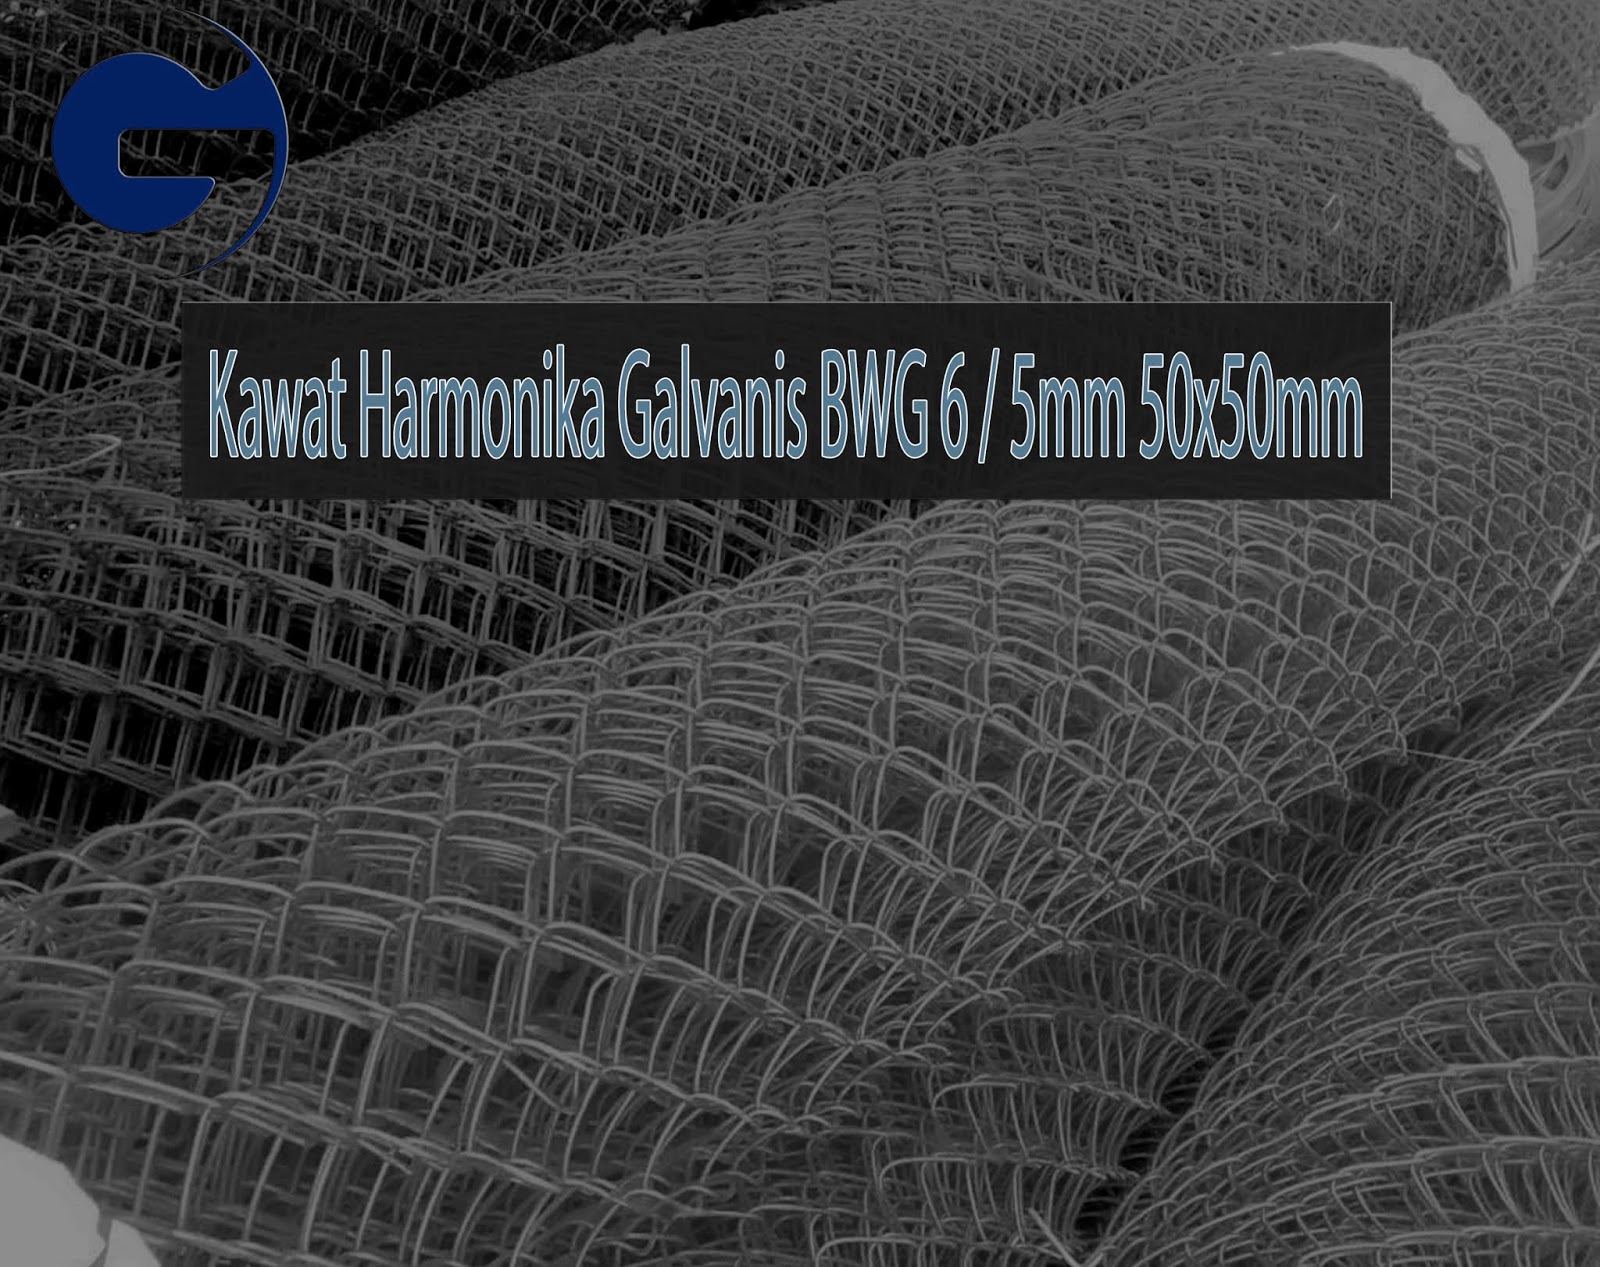 Jual Kawat Harmonika Galvanis SNI BWG 6/5mm 50x50mm